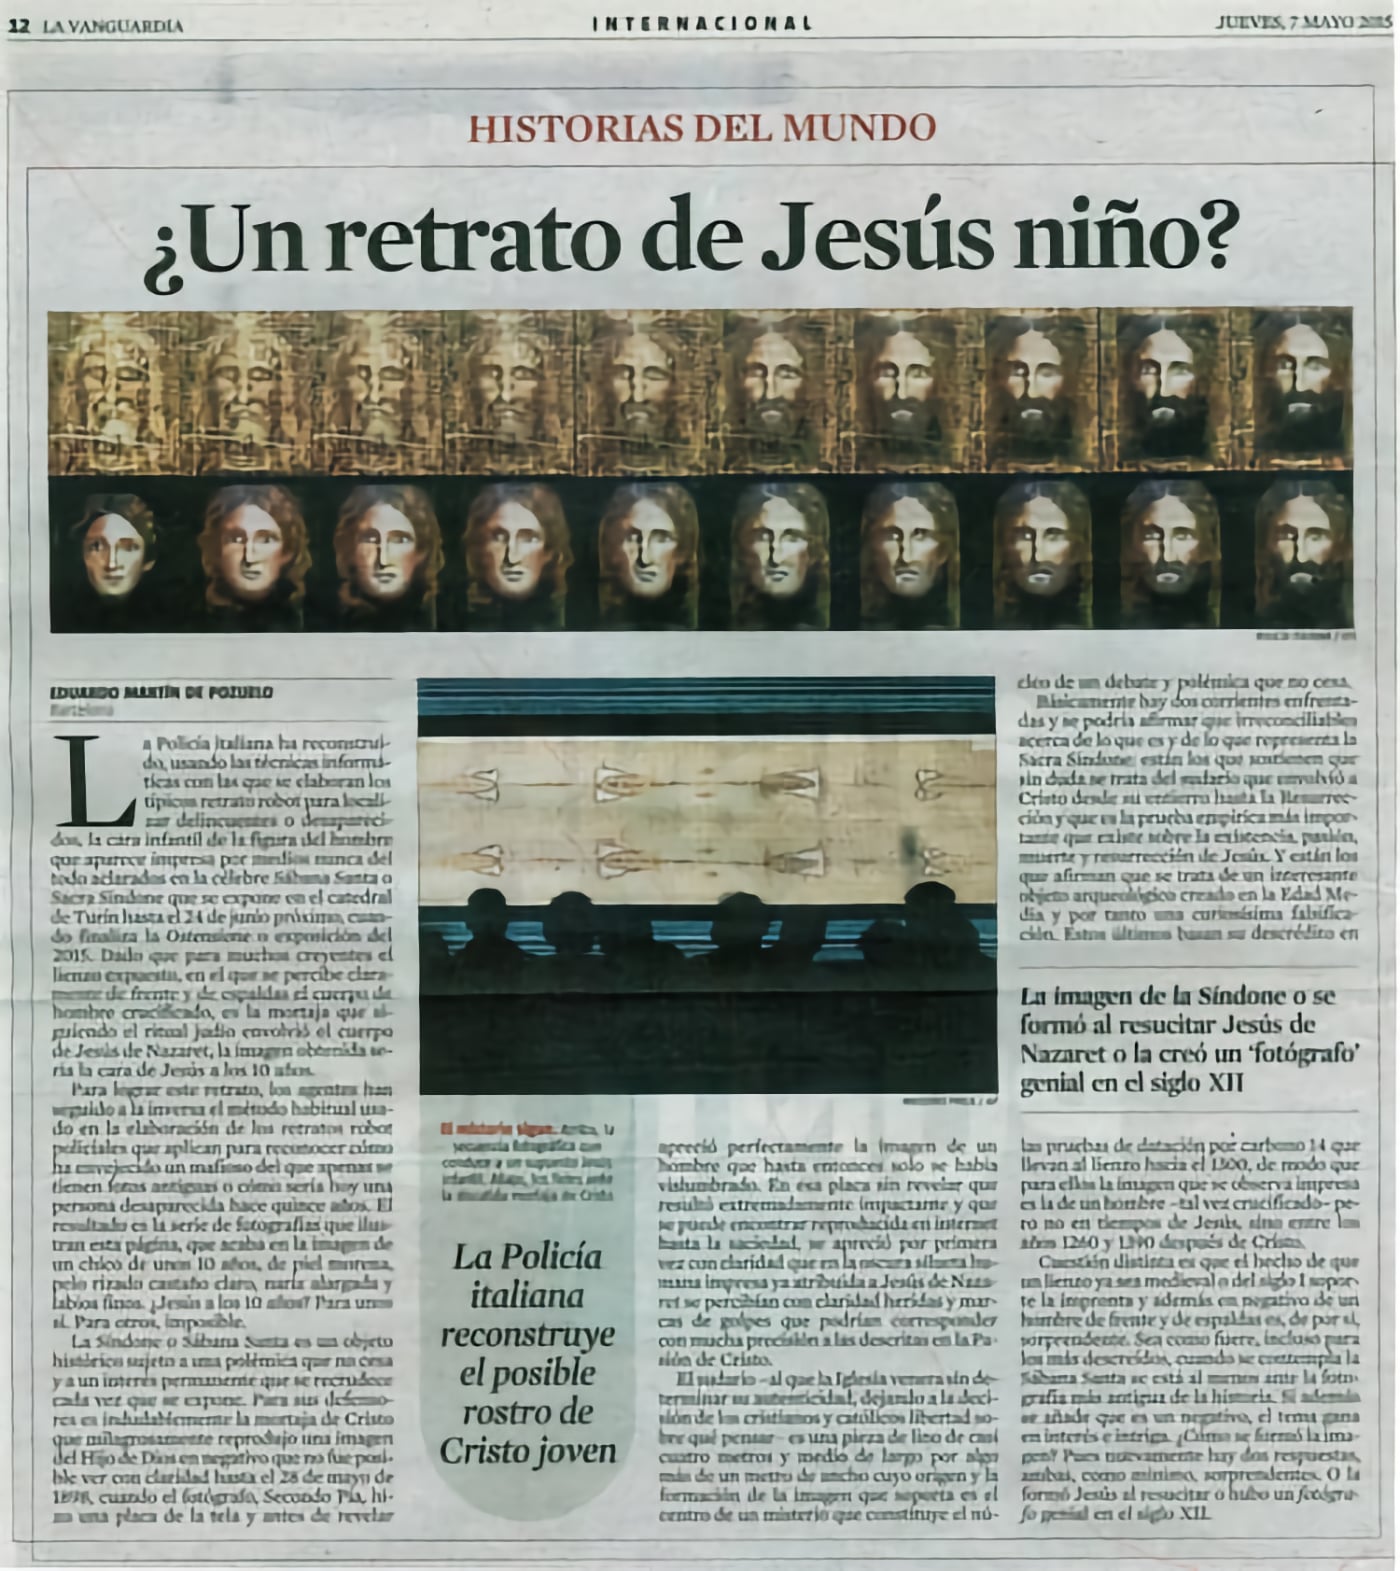 Información de 'La Vanguardia' sobre el retrato robot de Jesús de niño a partir de la sábana santa.